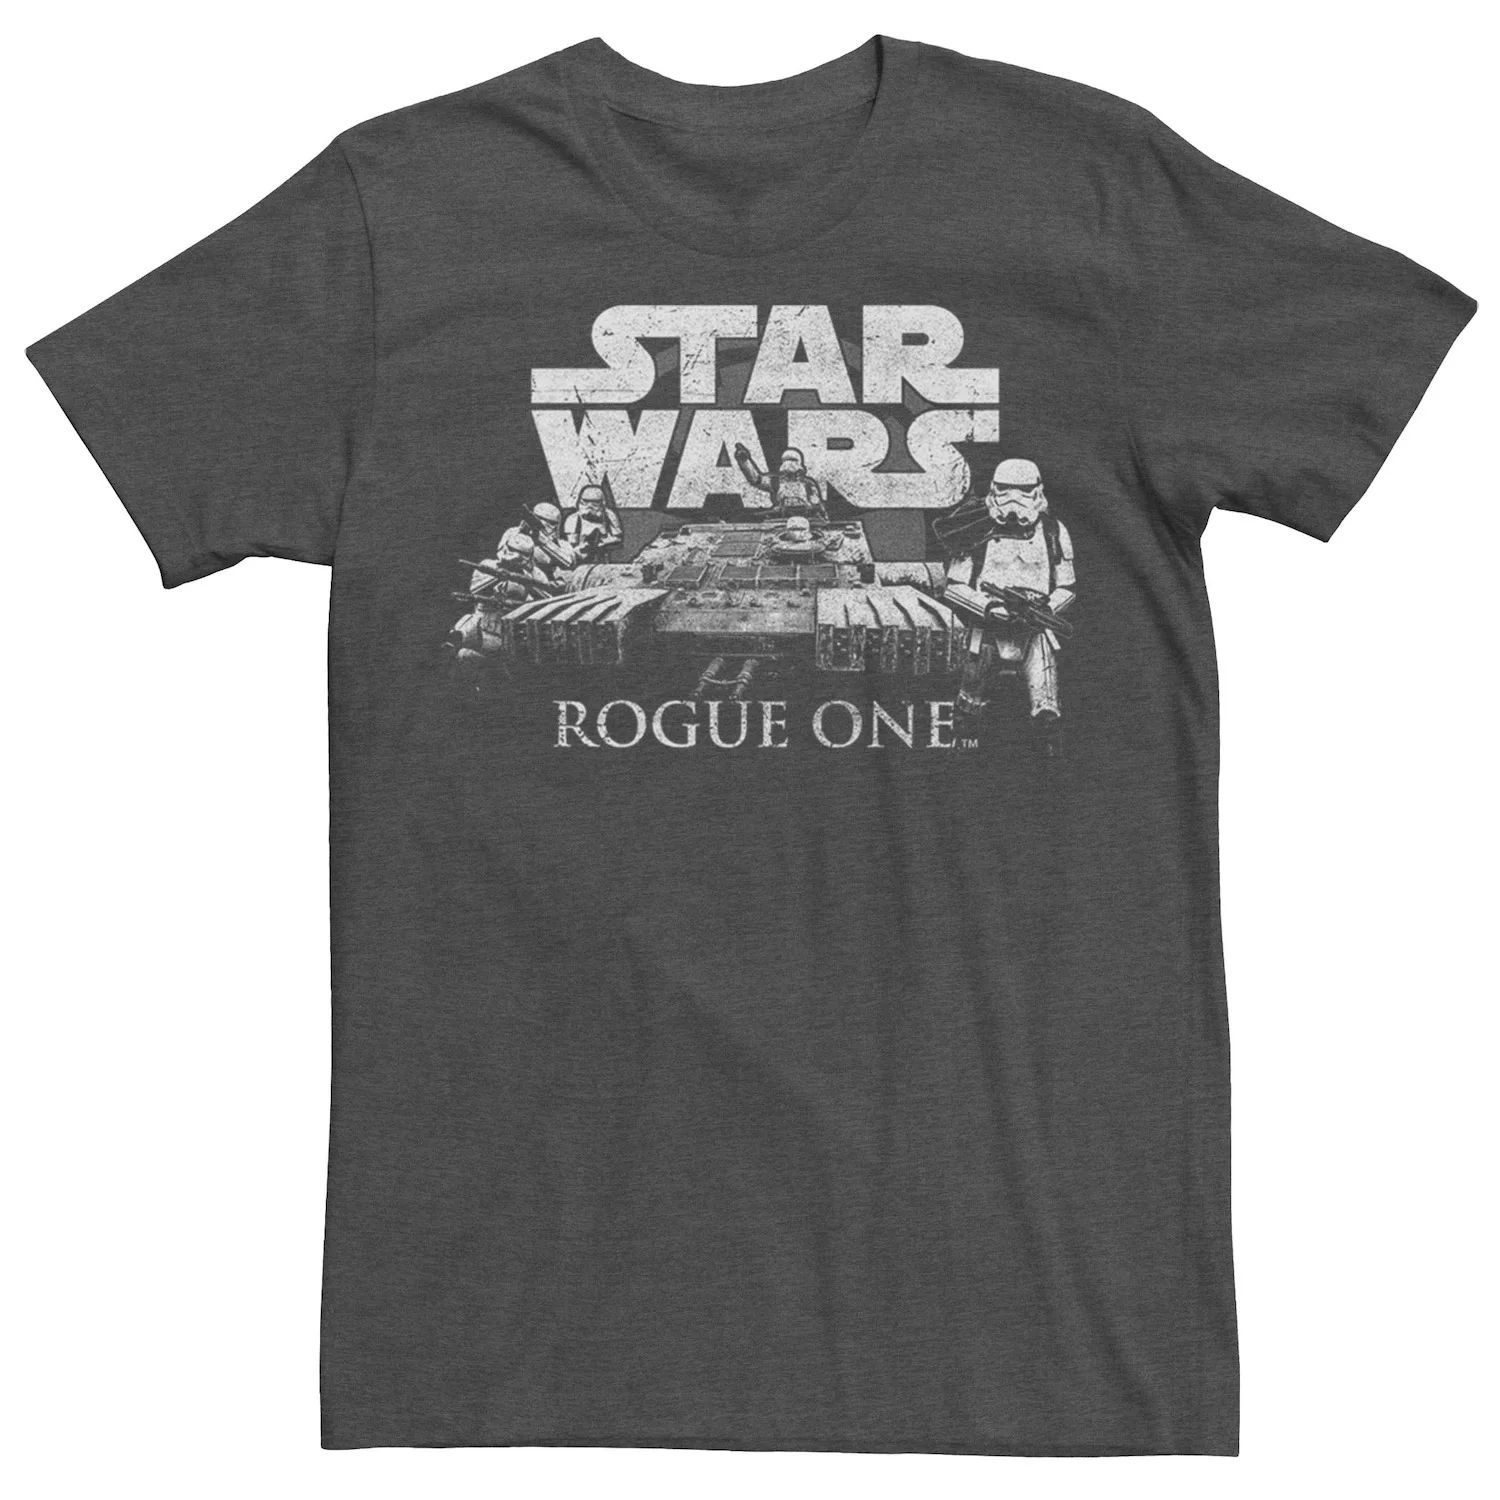 Мужская футболка с логотипом Star Wars Rogue One Troopers мужская футболка с логотипом rogue one star wars